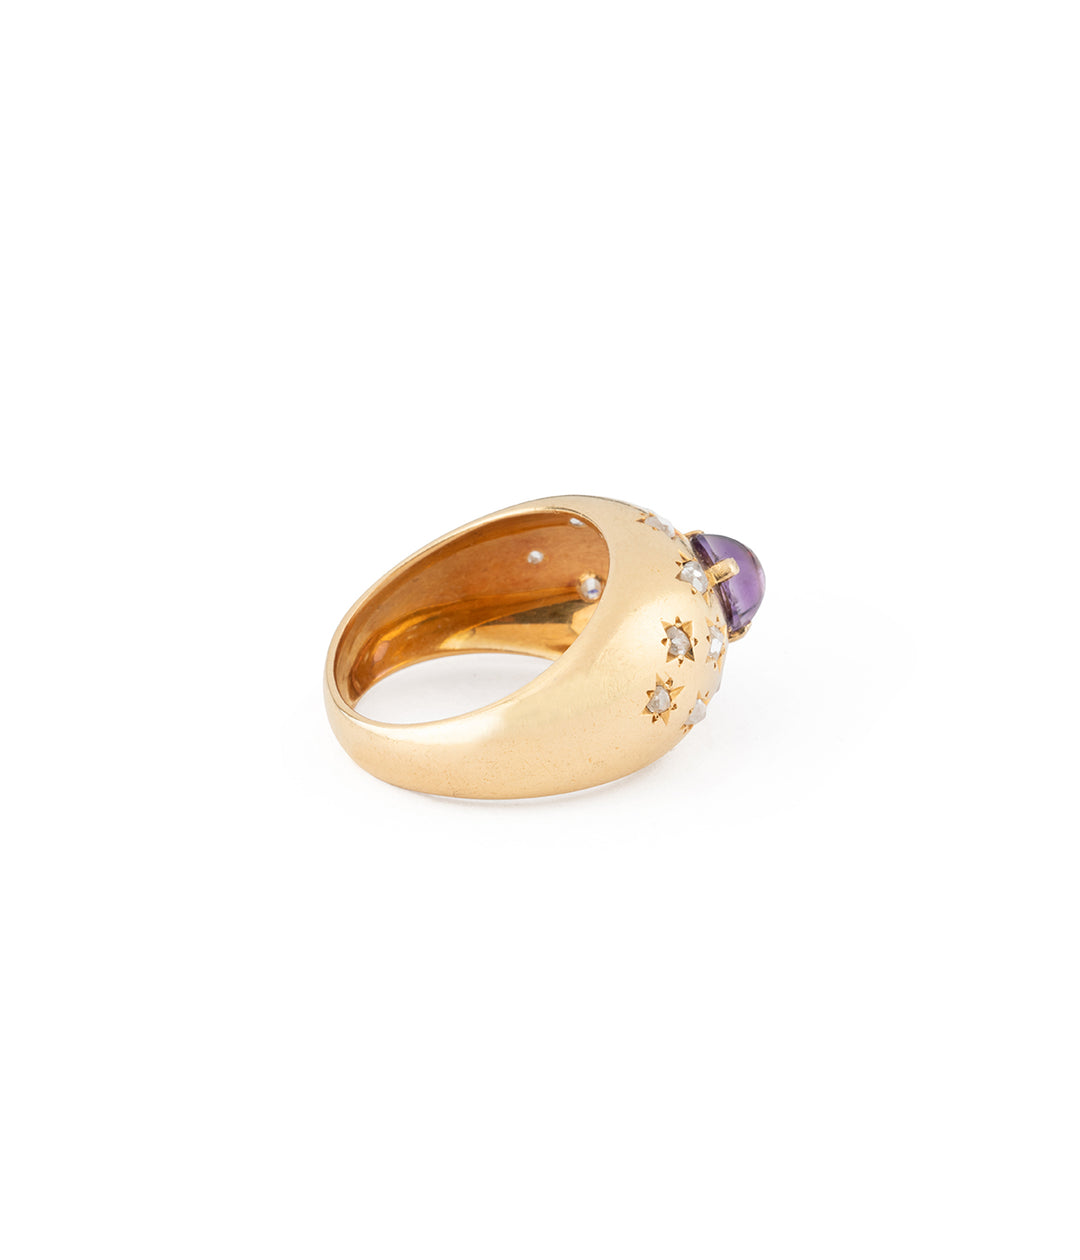 Antique dome ring amethyst diamonds gold Biel - Caillou Paris